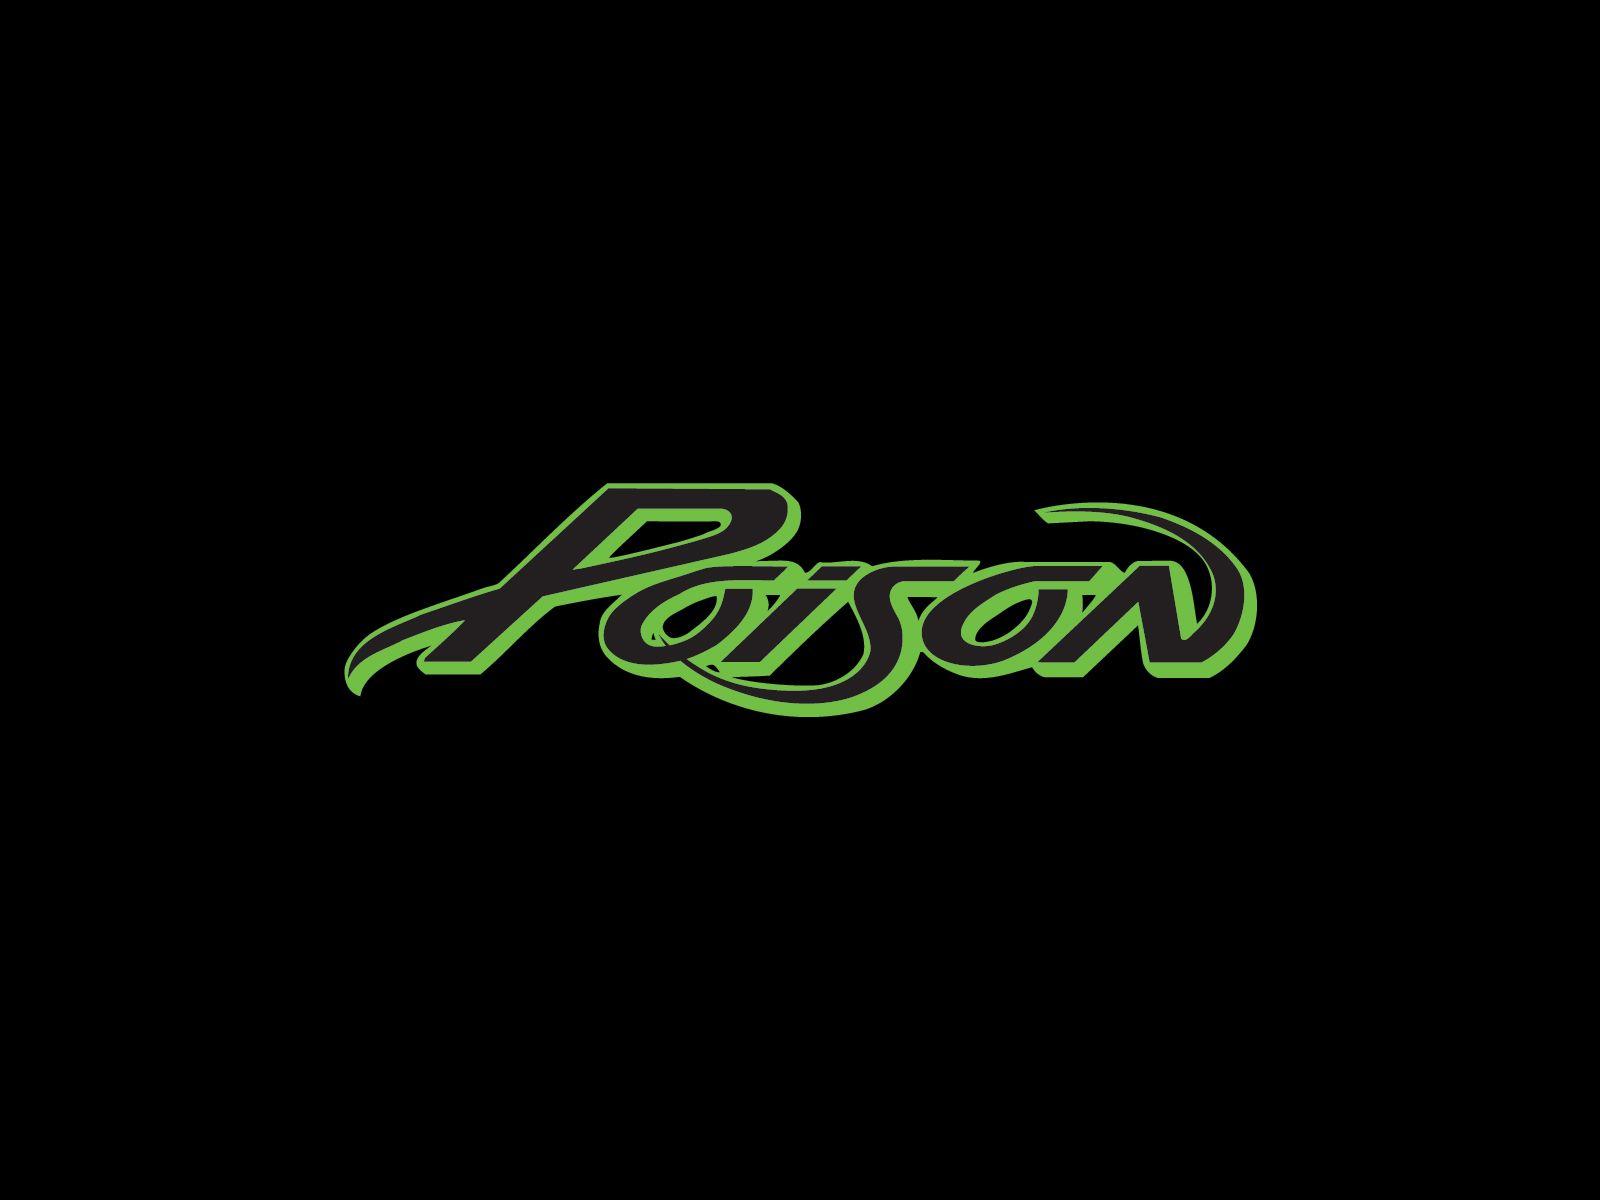 Poison Band Logo - Poison band logo | Band logos - Rock band logos, metal bands logos ...